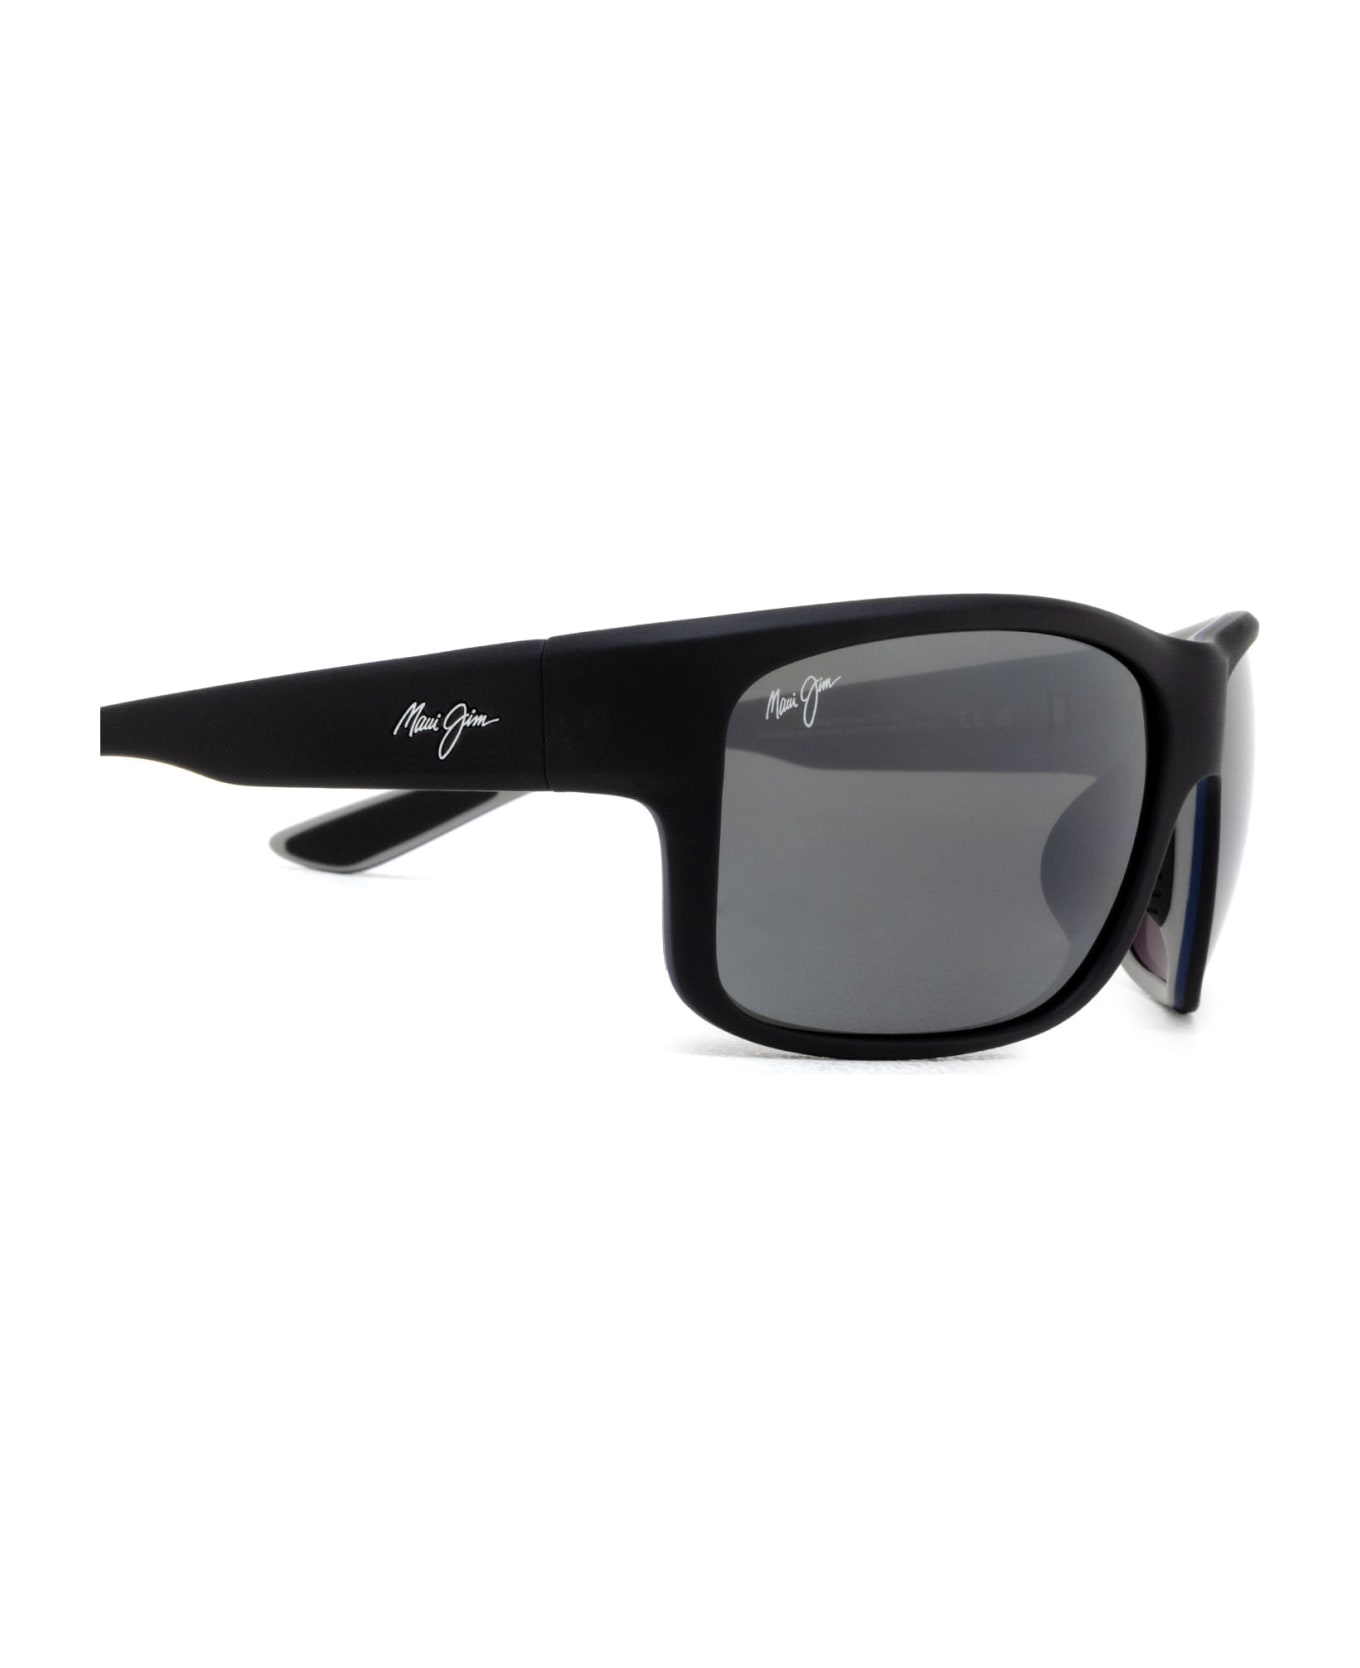 Maui Jim Mj0815s Black Sunglasses - Black